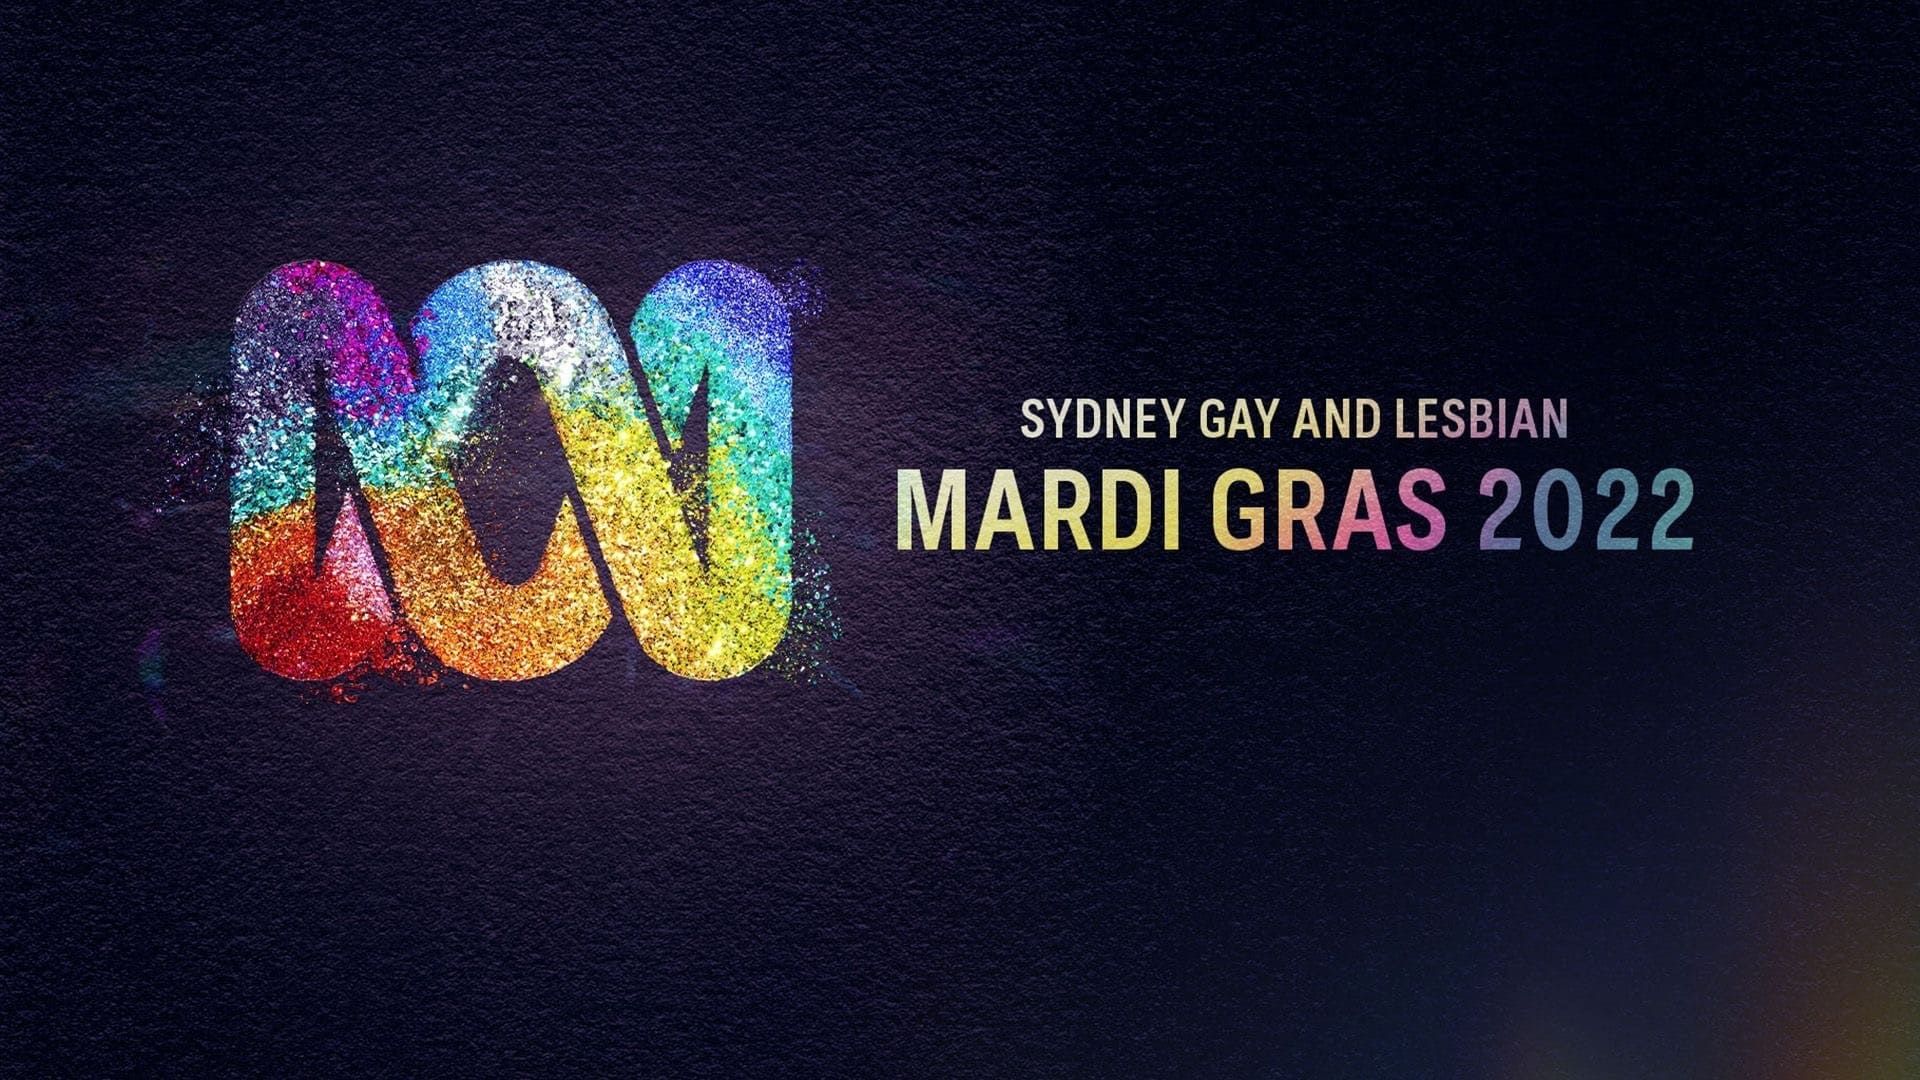 Sydney Gay and Lesbian Mardi Gras background